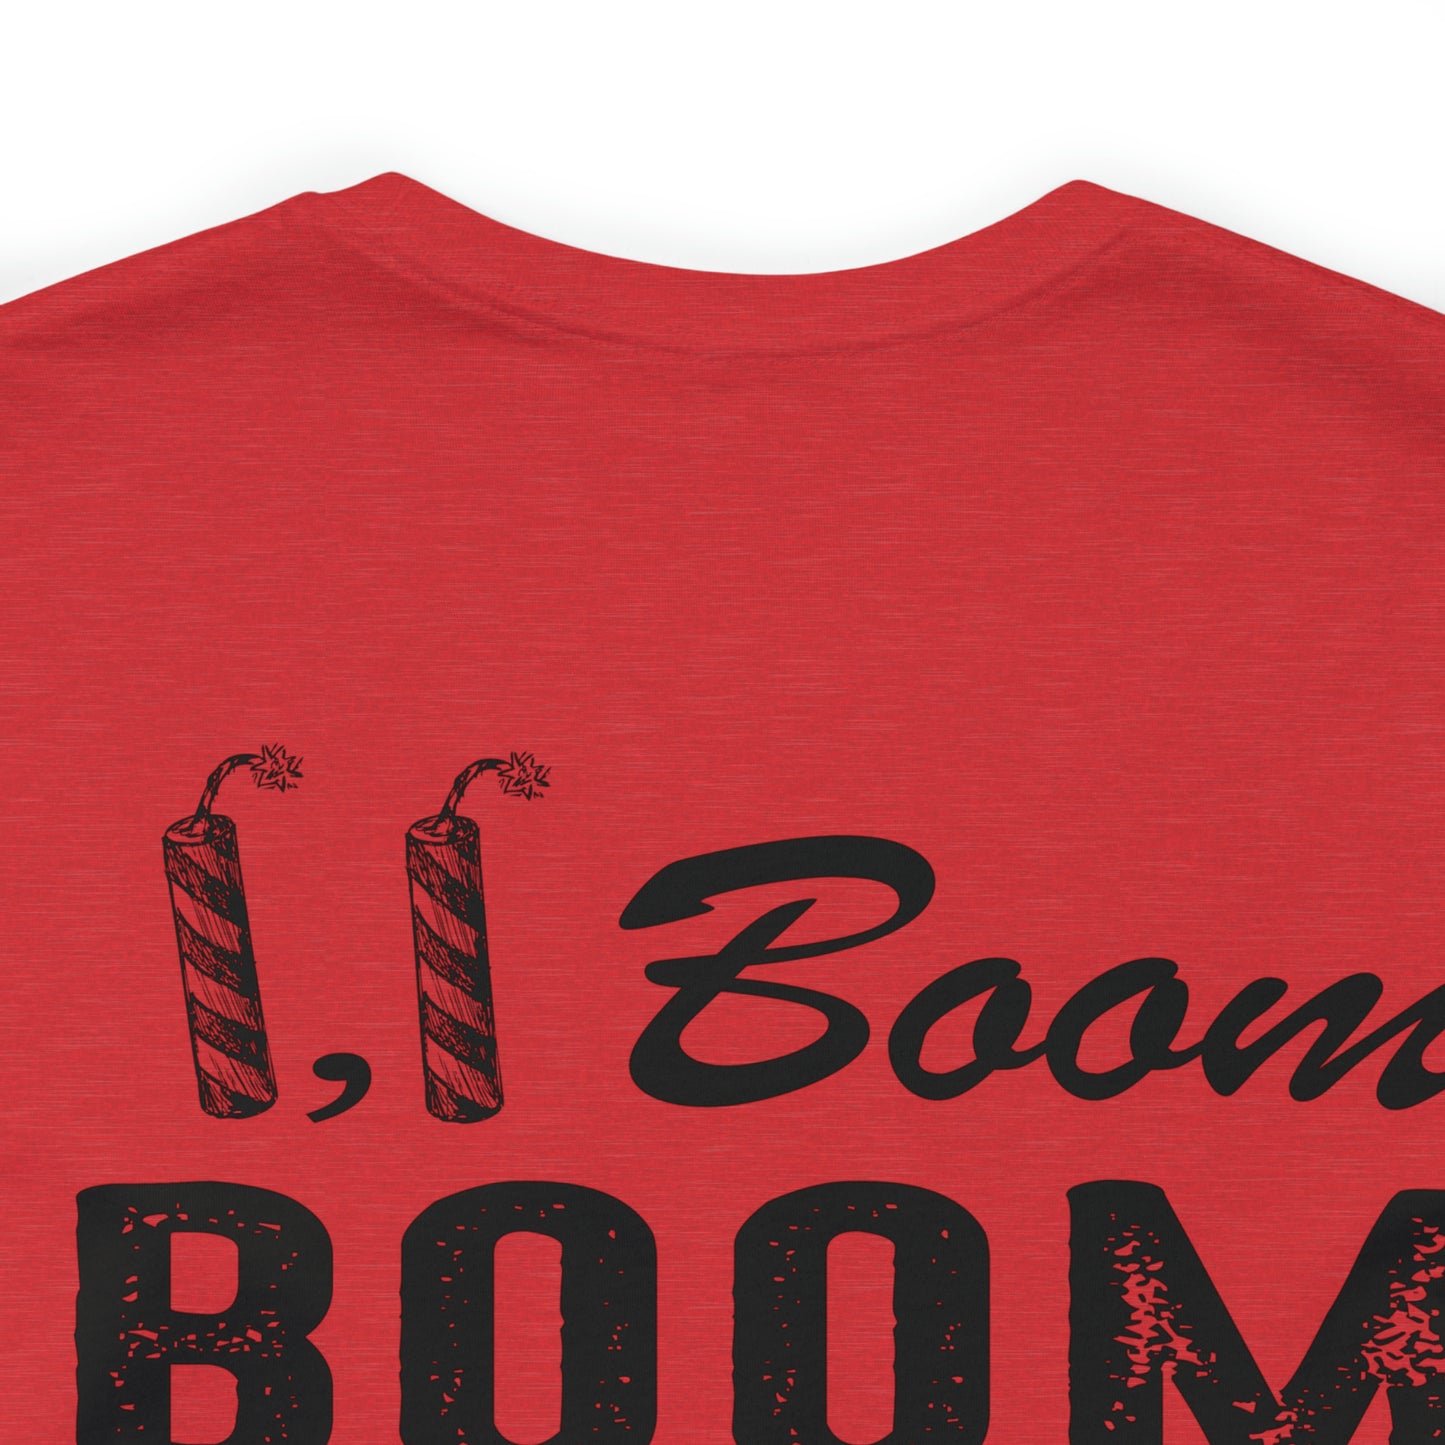 Firecracker, Firecracker, boom boom boom Adult Tshirt